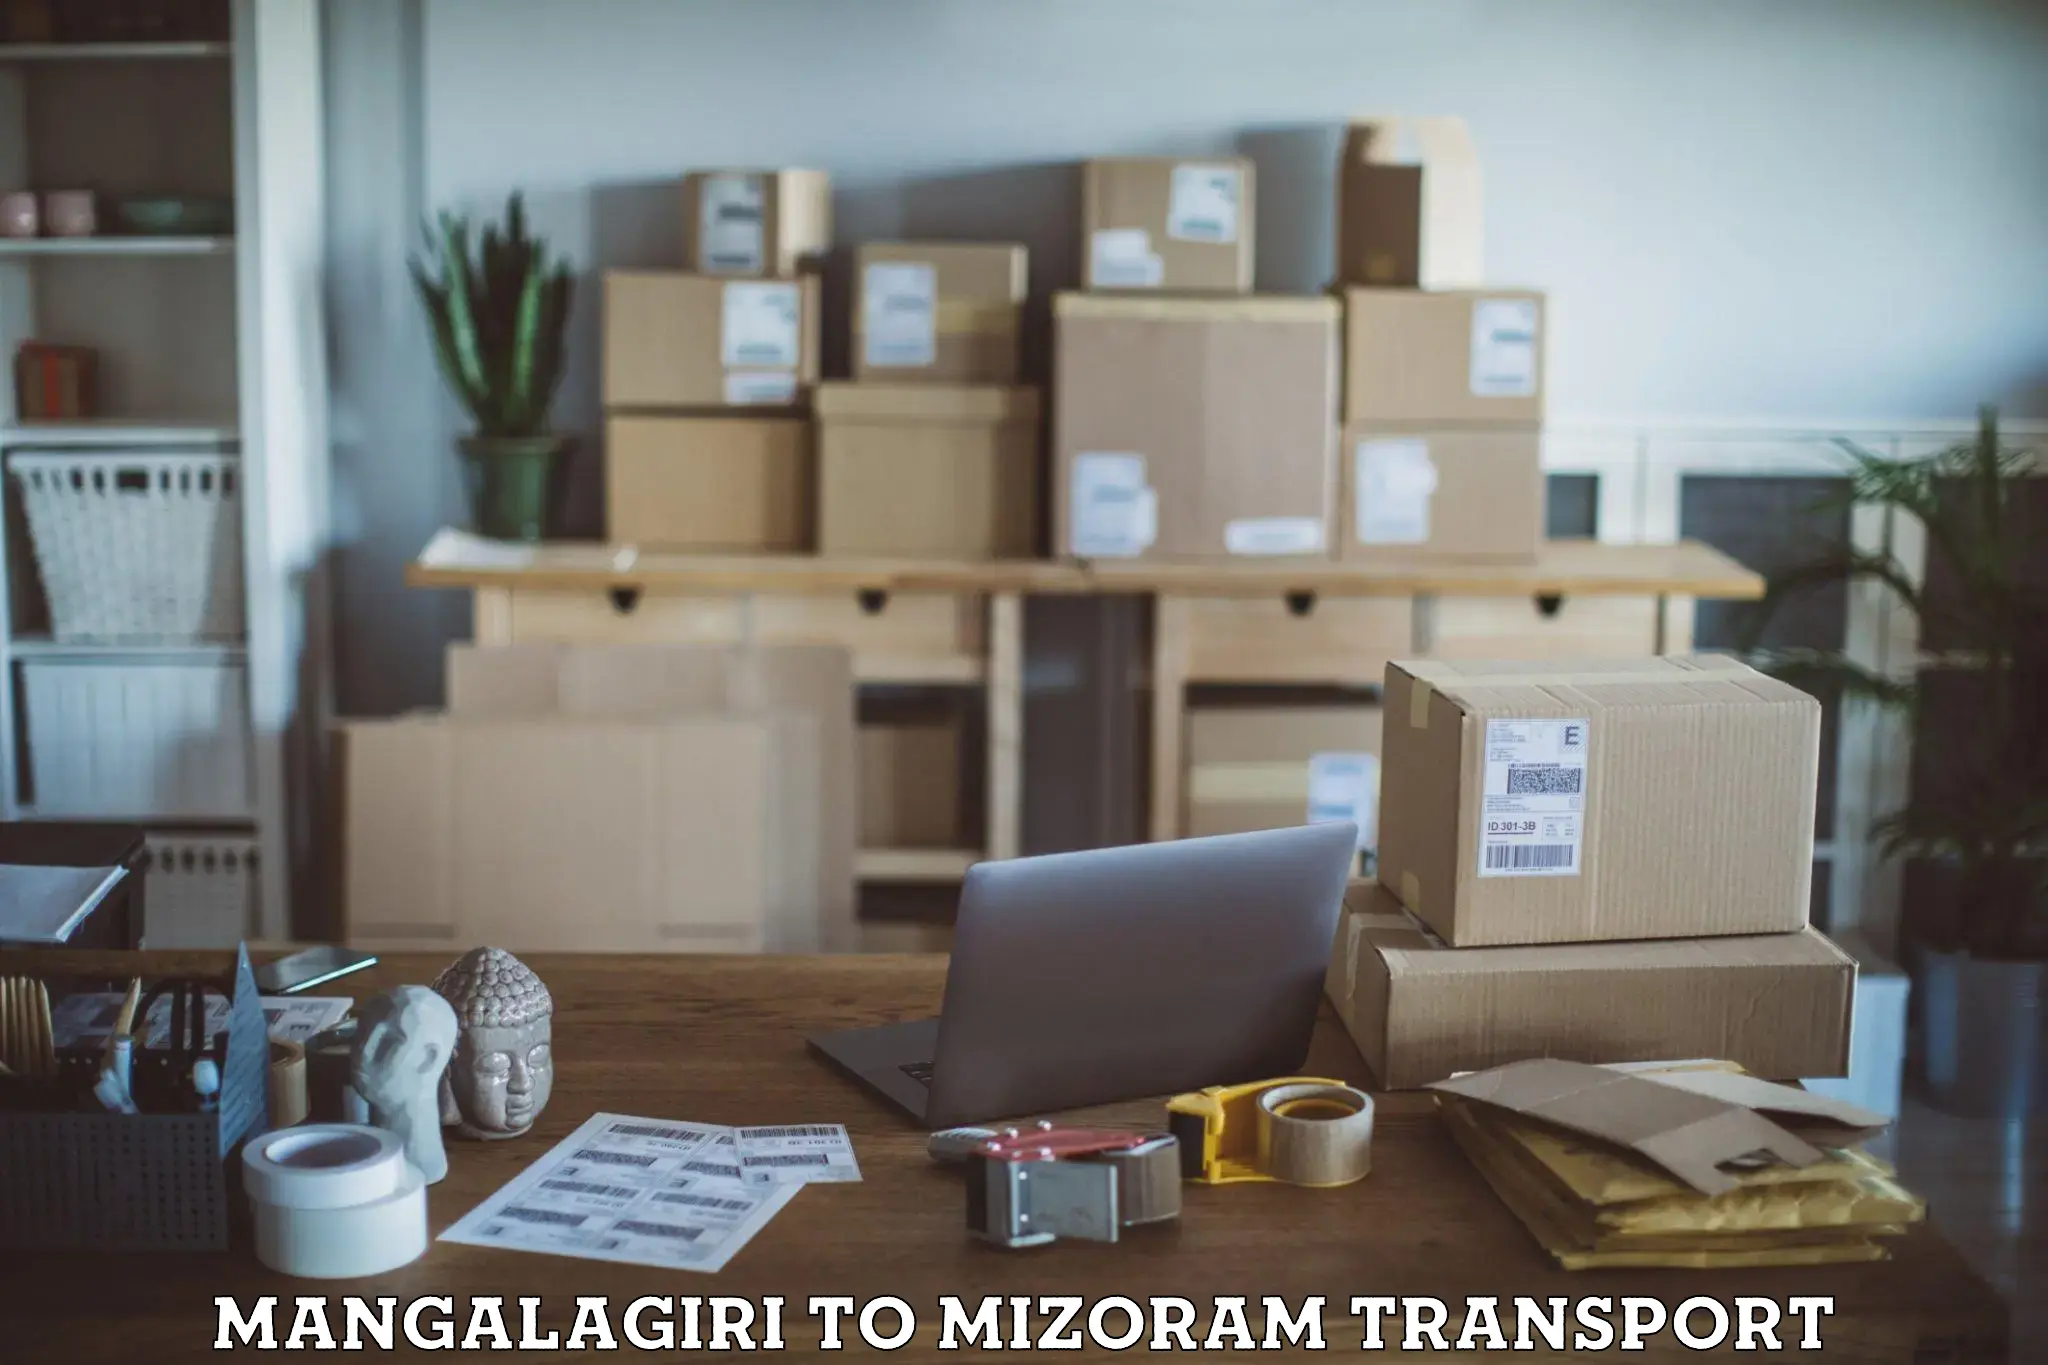 Transport in sharing Mangalagiri to Mizoram